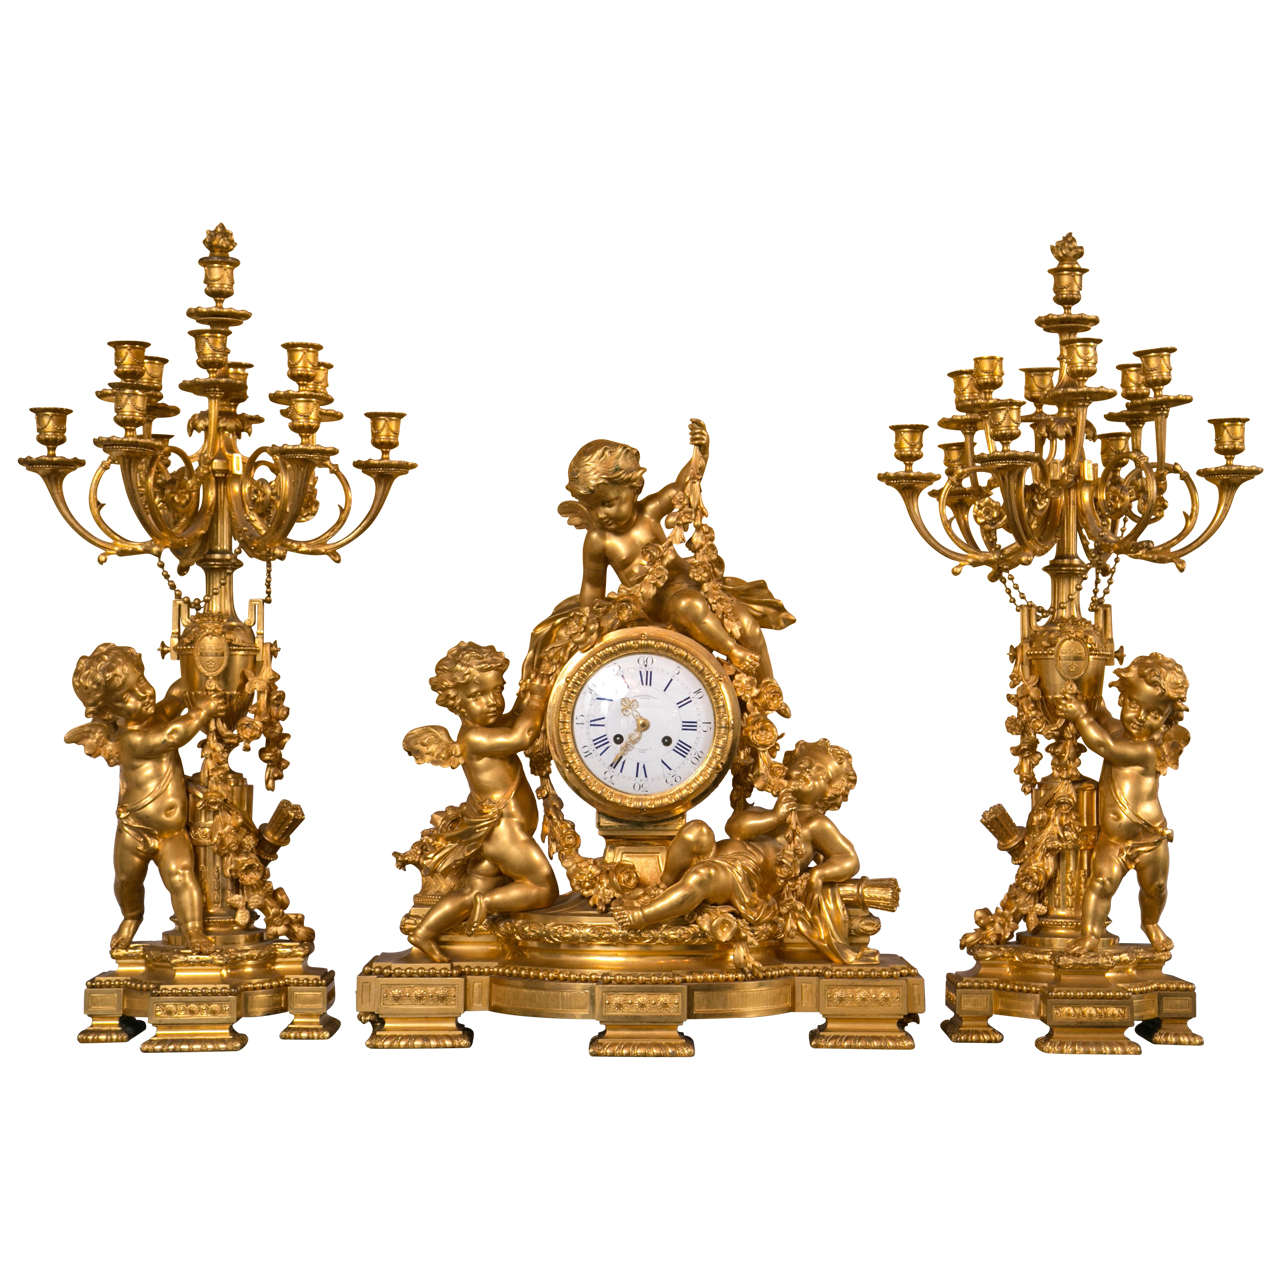  Doré Bronze Three-Piece Clock Set with Cherubs by Charpentier & Cie For Sale